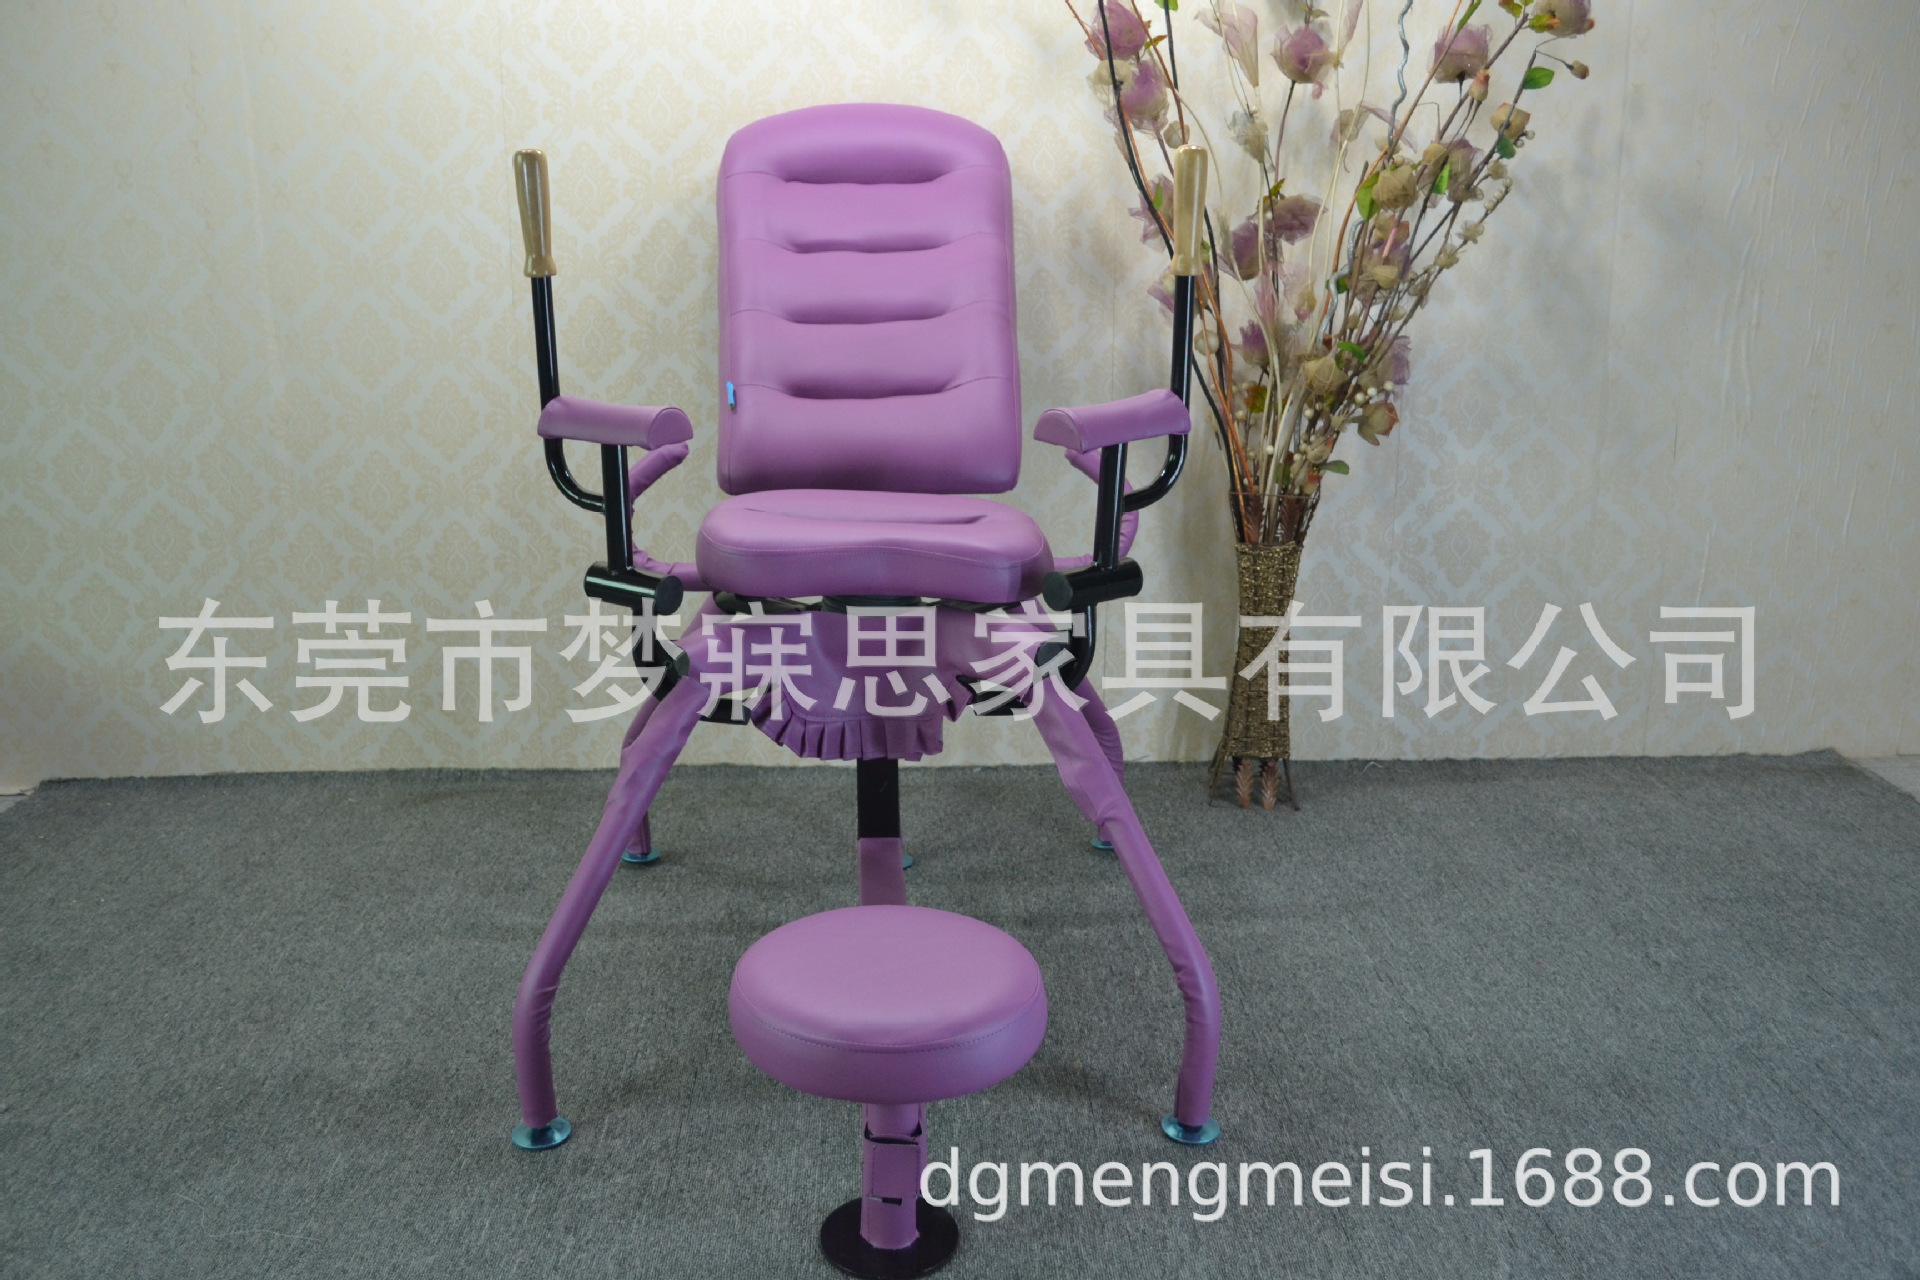 欢乐椅使用示意图八爪-图库-五毛网